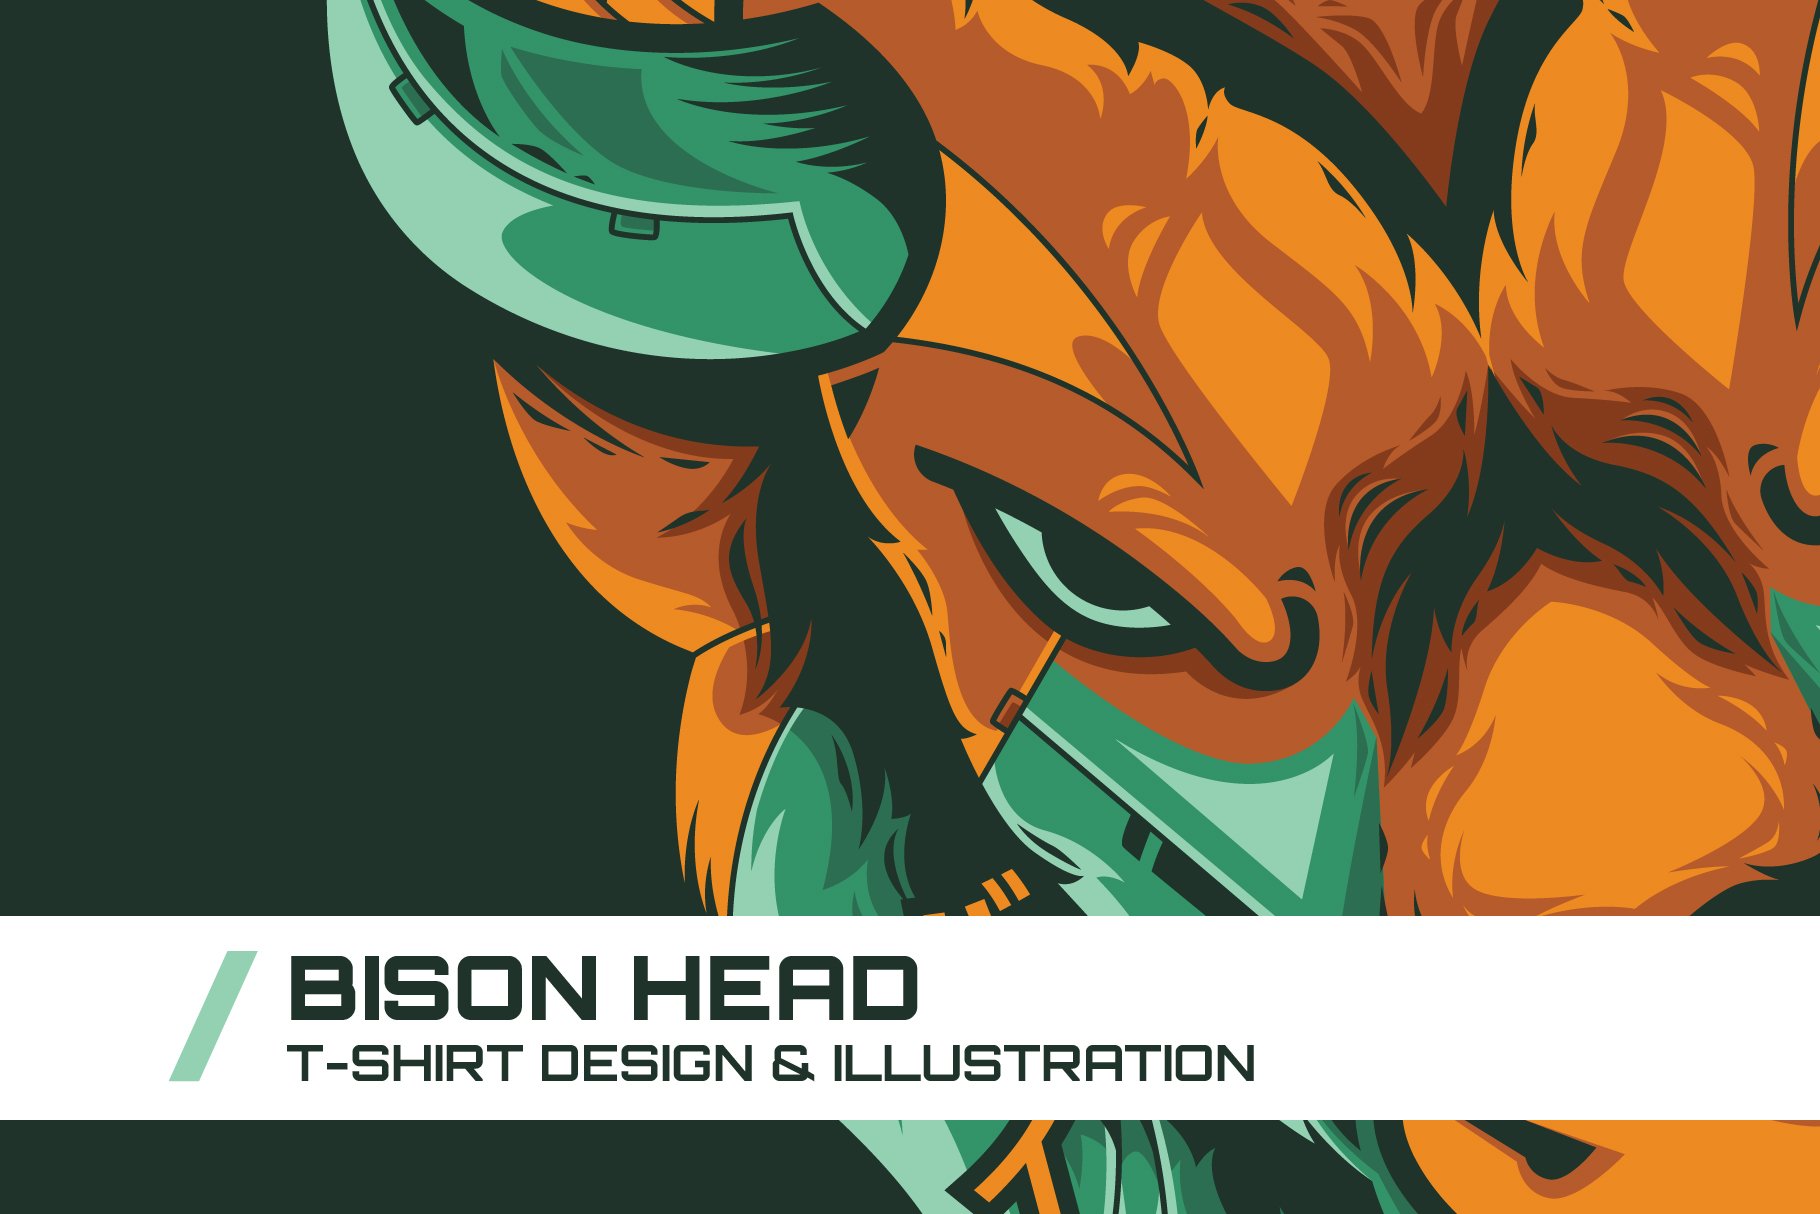 Bison Head Illustration cover image.